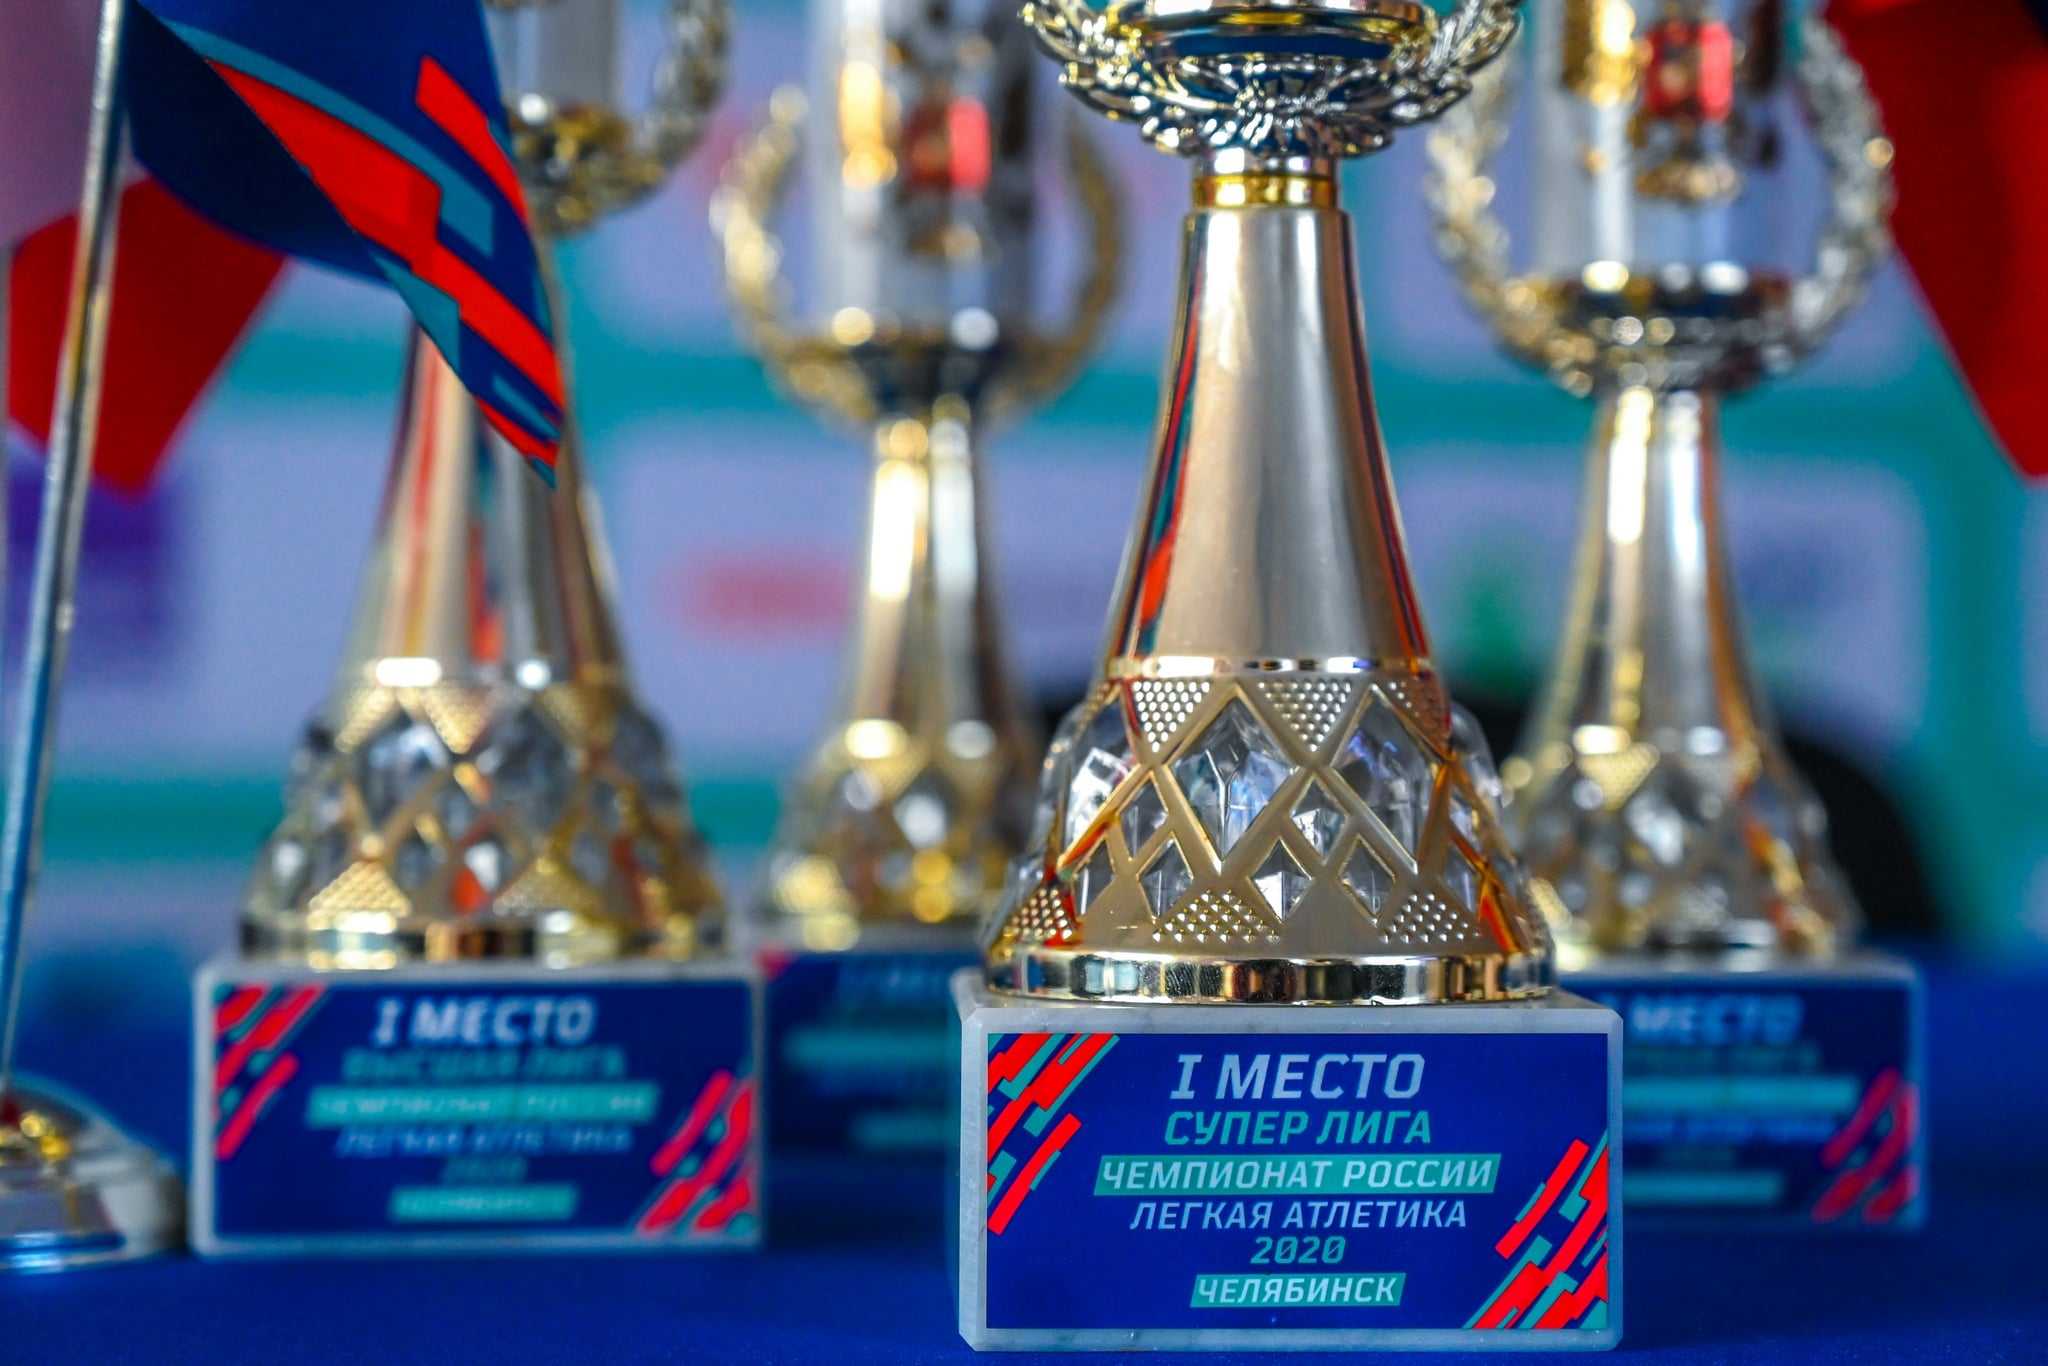 Челябинка Евгения Соловьева взяла серебро чемпионата России по легкой атлетике